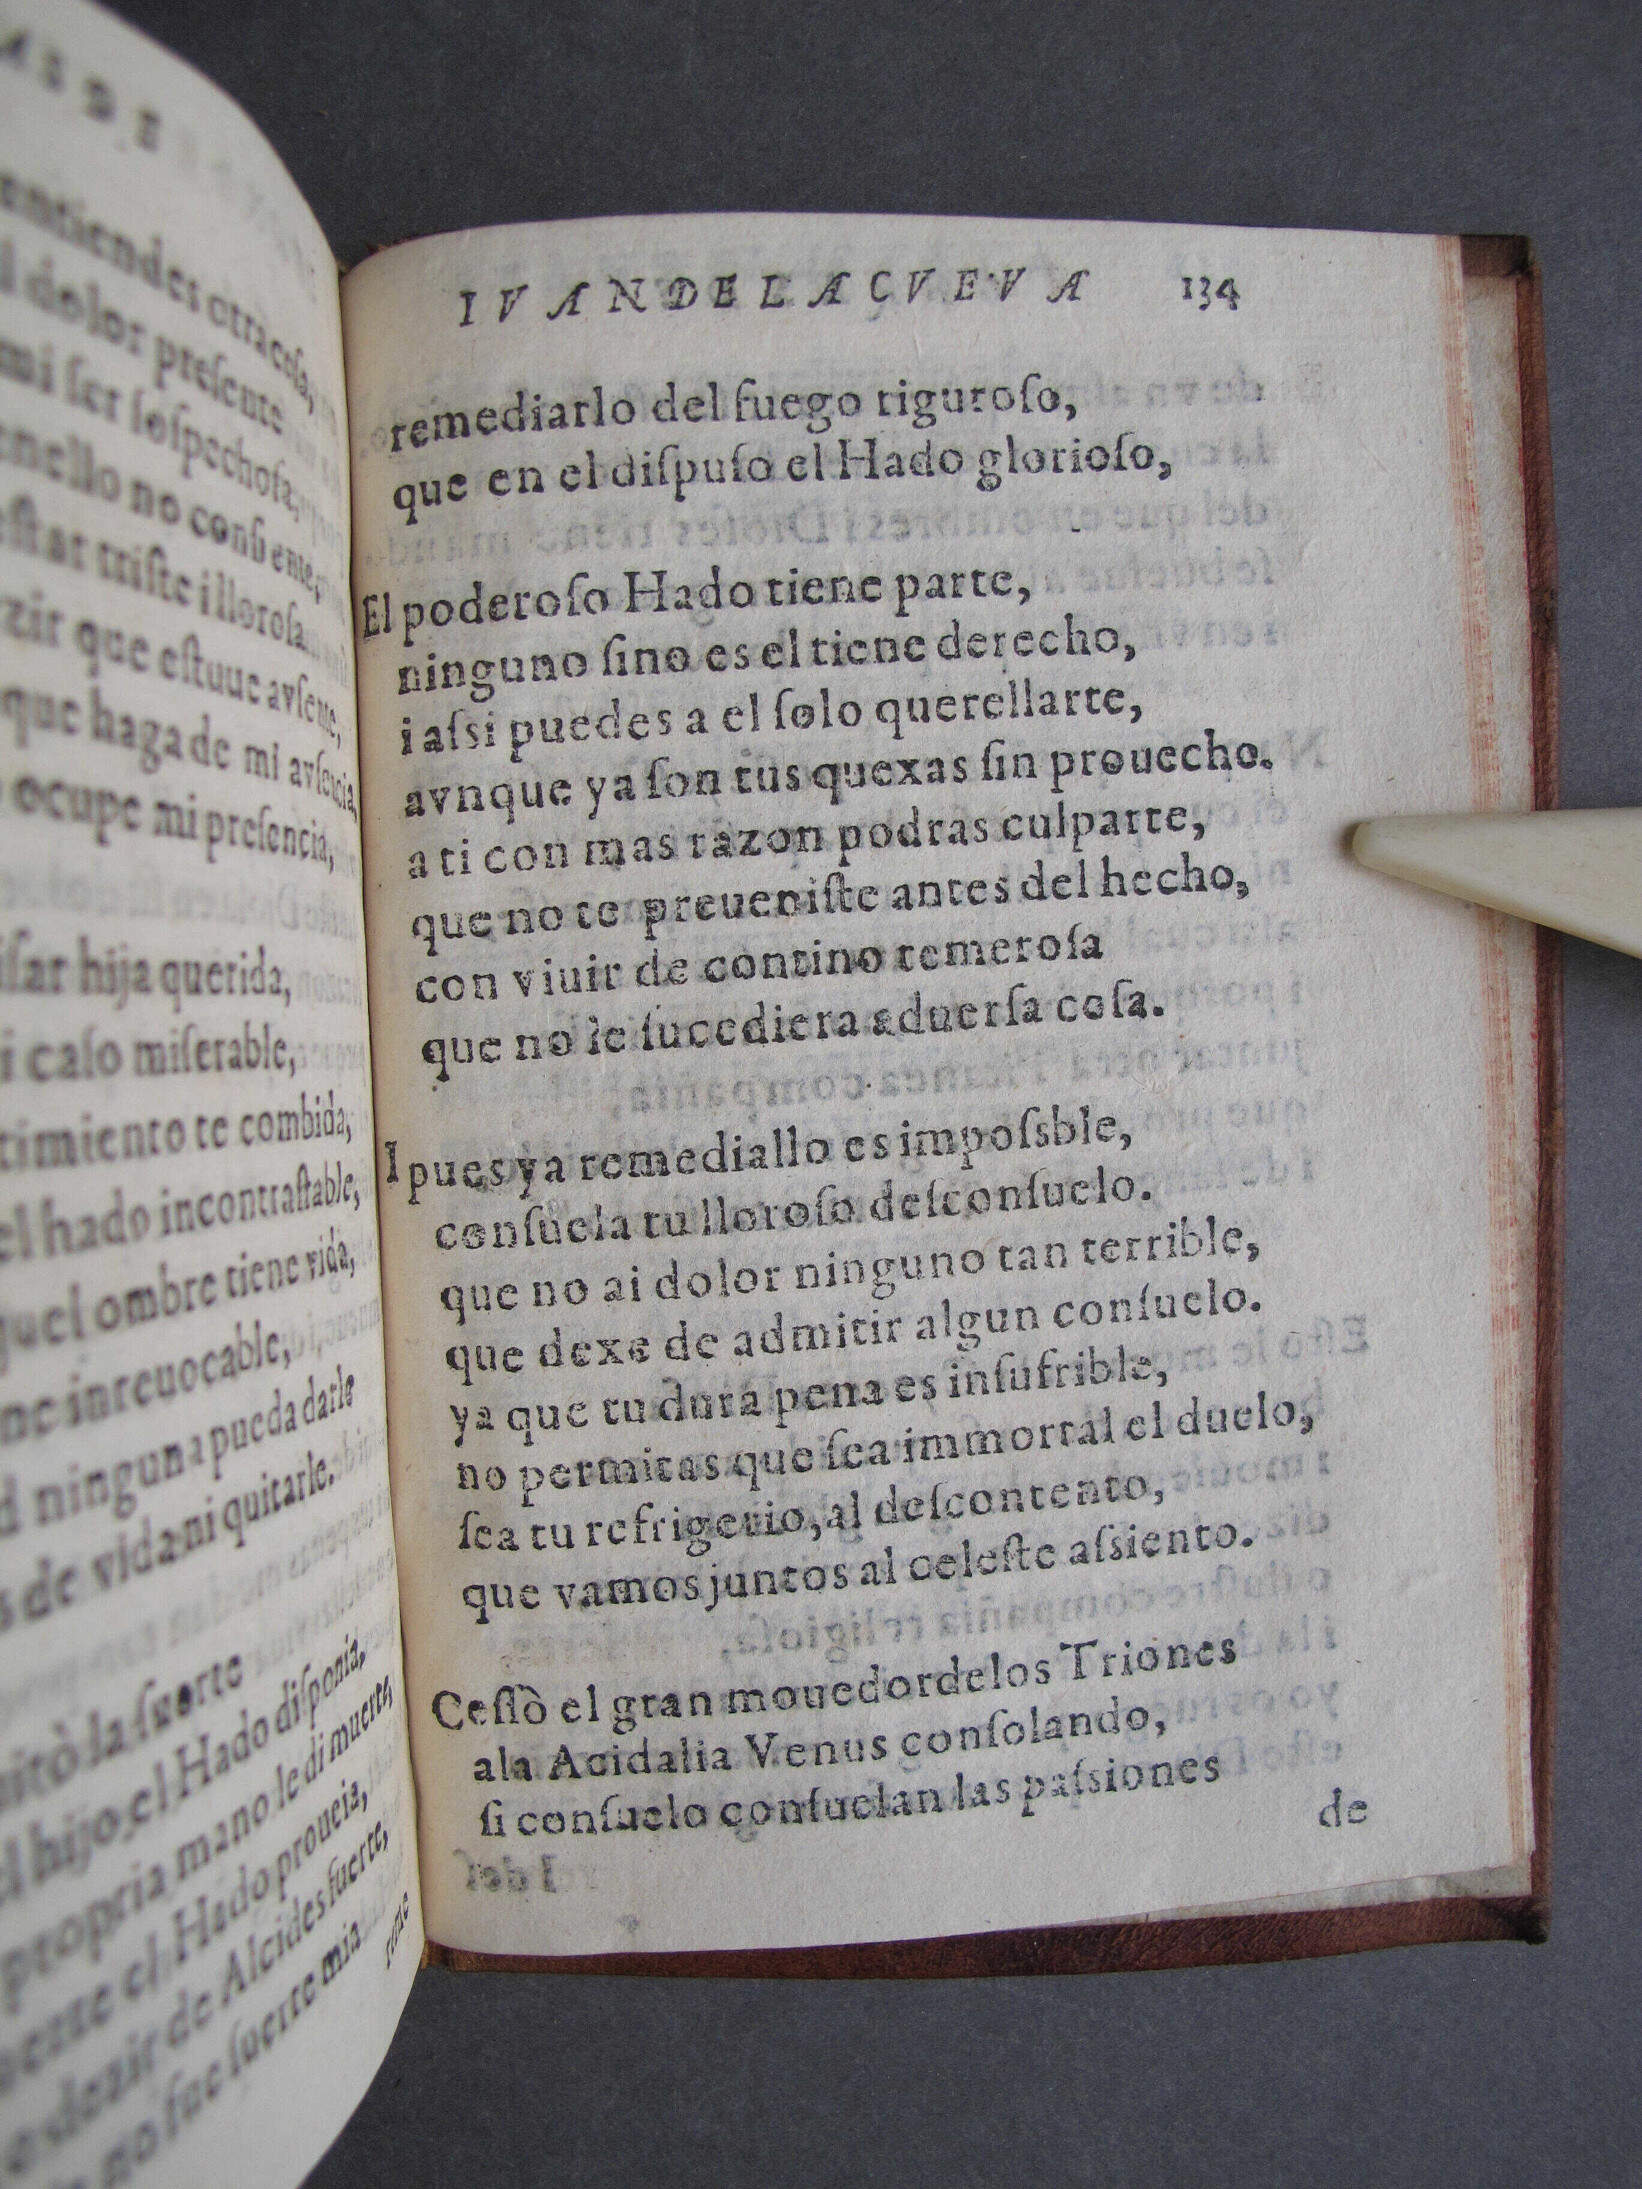 Folio R6